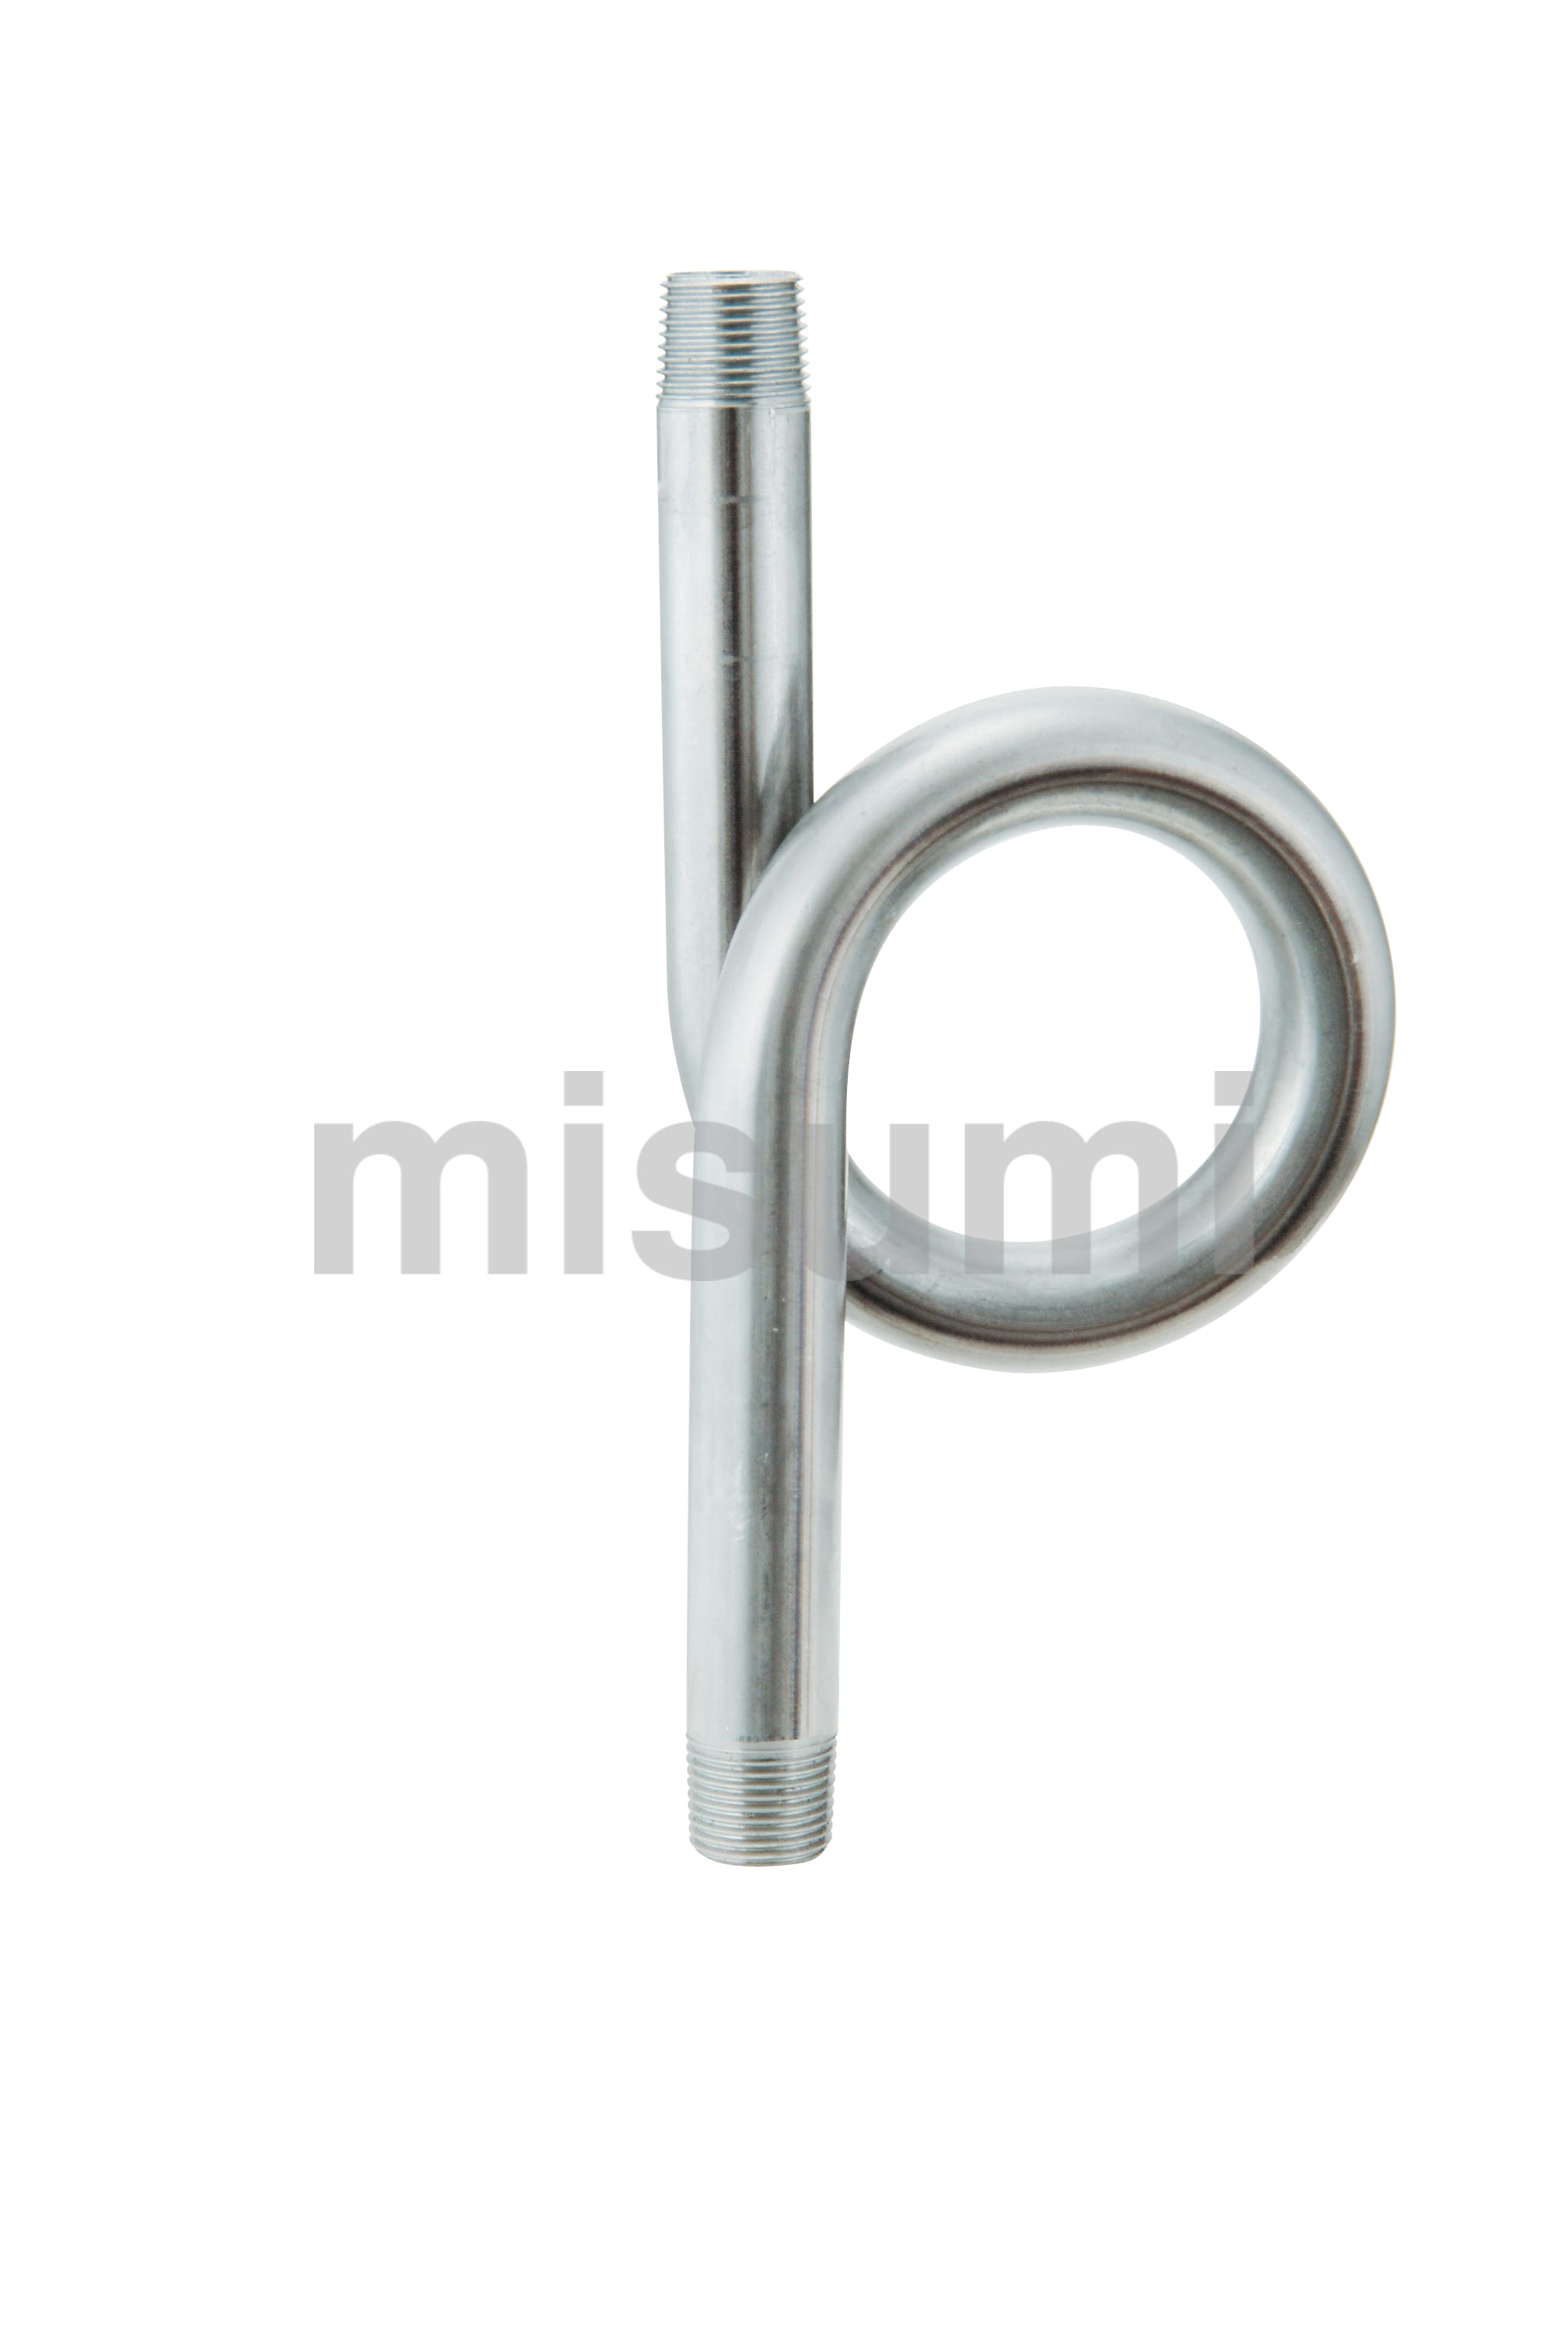 圧力計用アクセサリー“メートルパイプ” 右下精器製造 MISUMI(ミスミ)